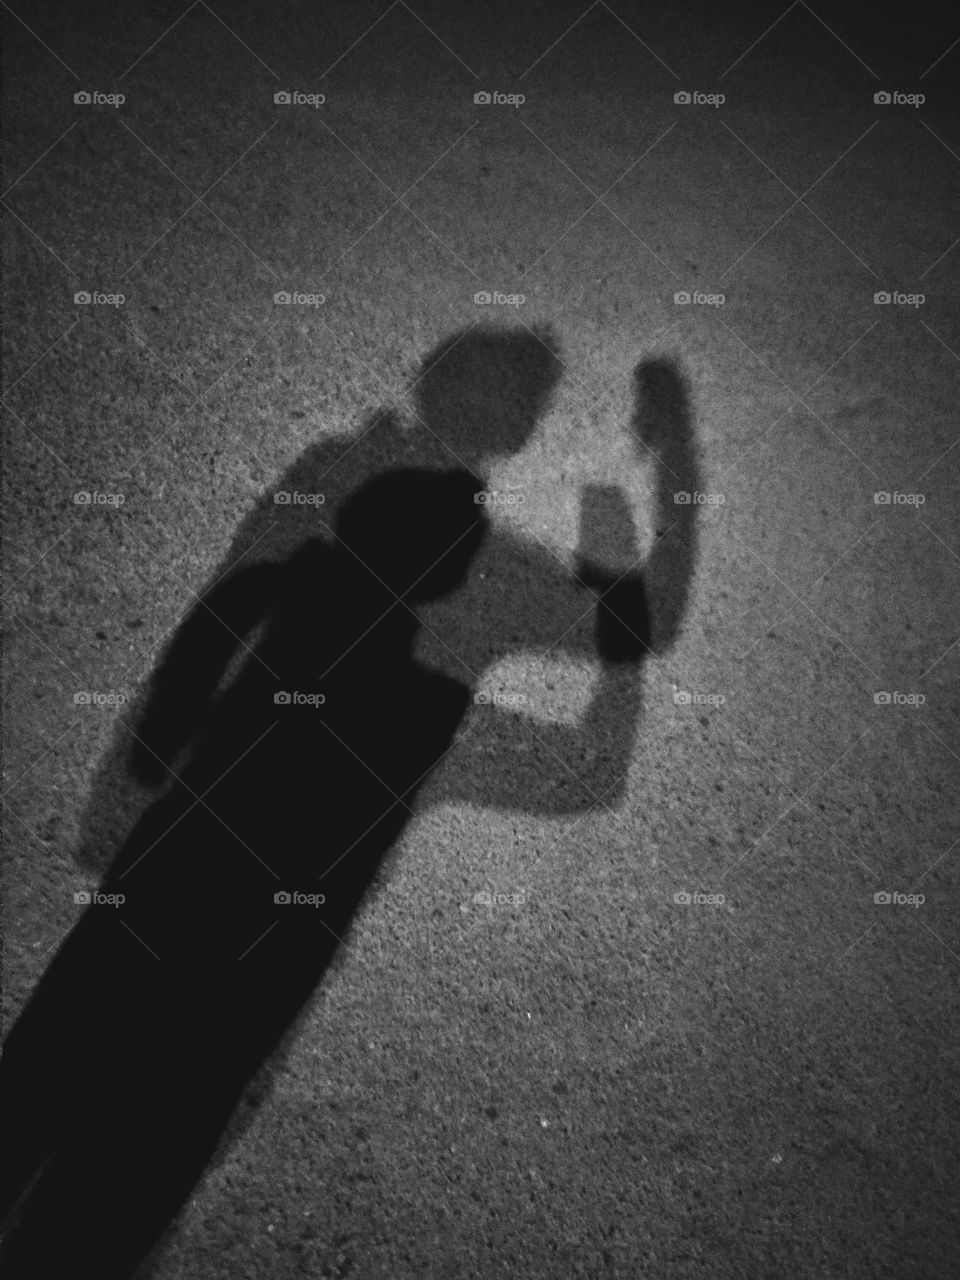 its my selfie shadow